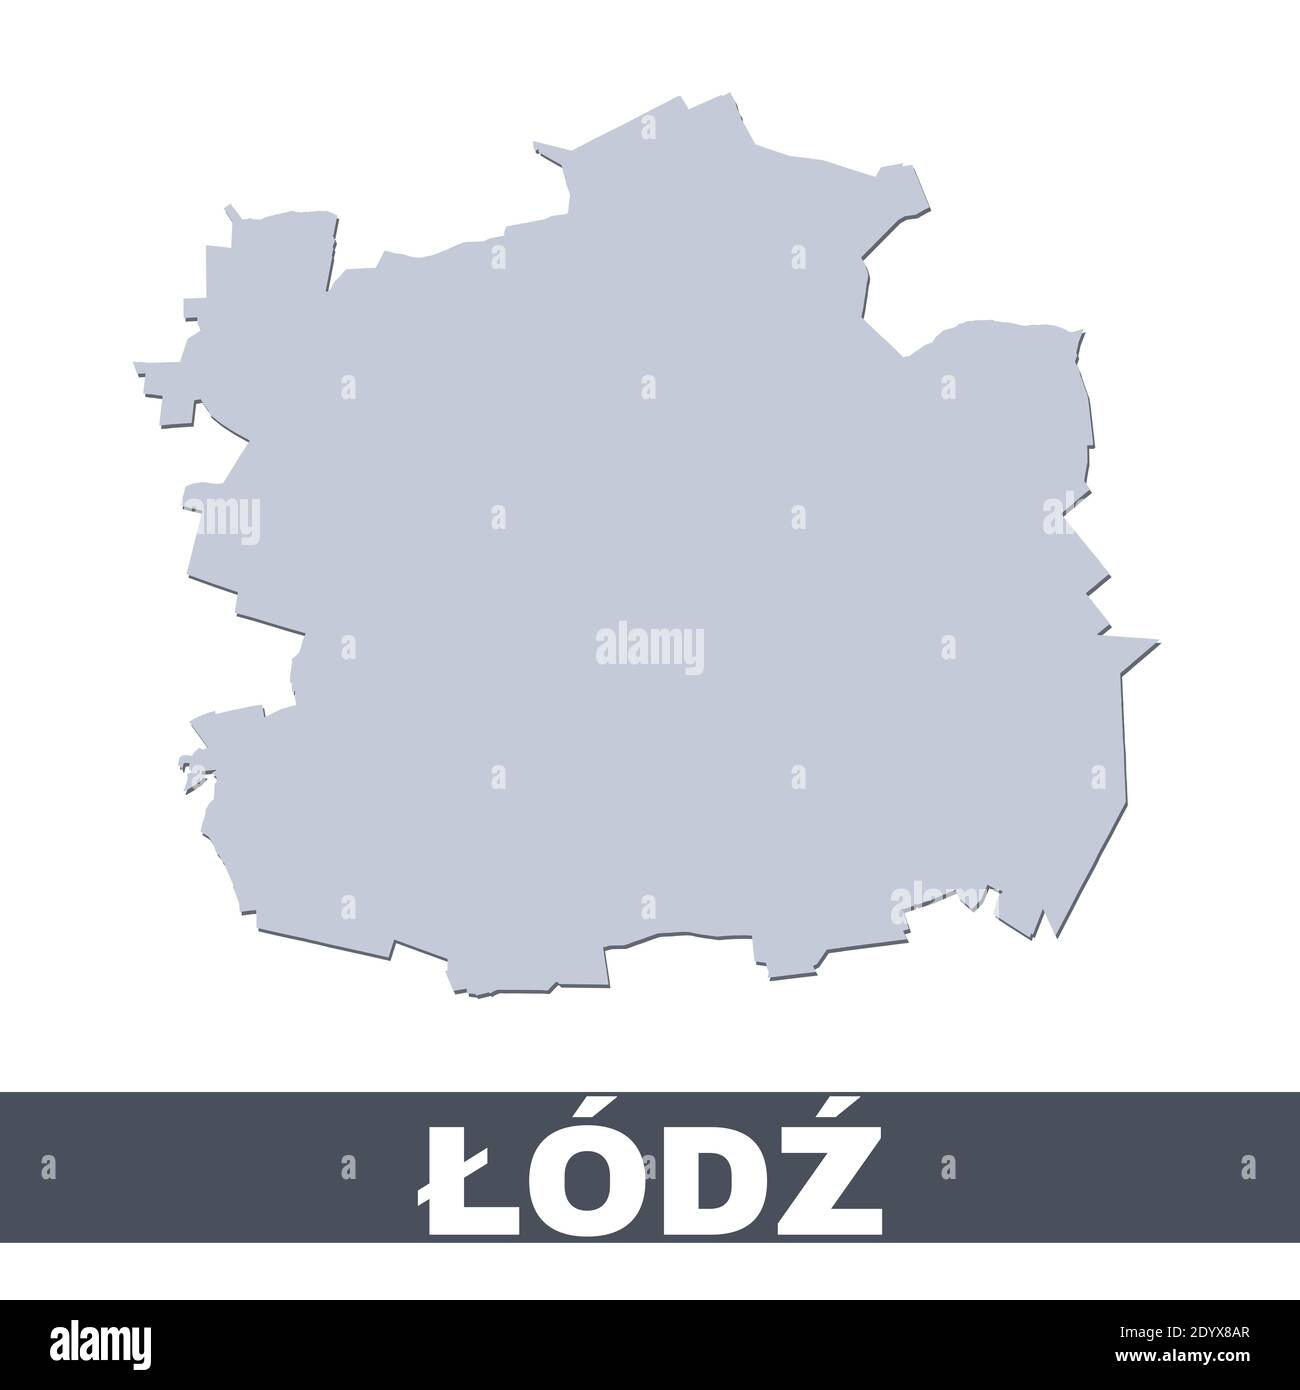 Mapa de contorno de Lodz. Mapa vectorial del área de la ciudad de Lodz dentro de sus fronteras. Gris con sombra sobre fondo blanco. Ilustración aislada. Ilustración del Vector